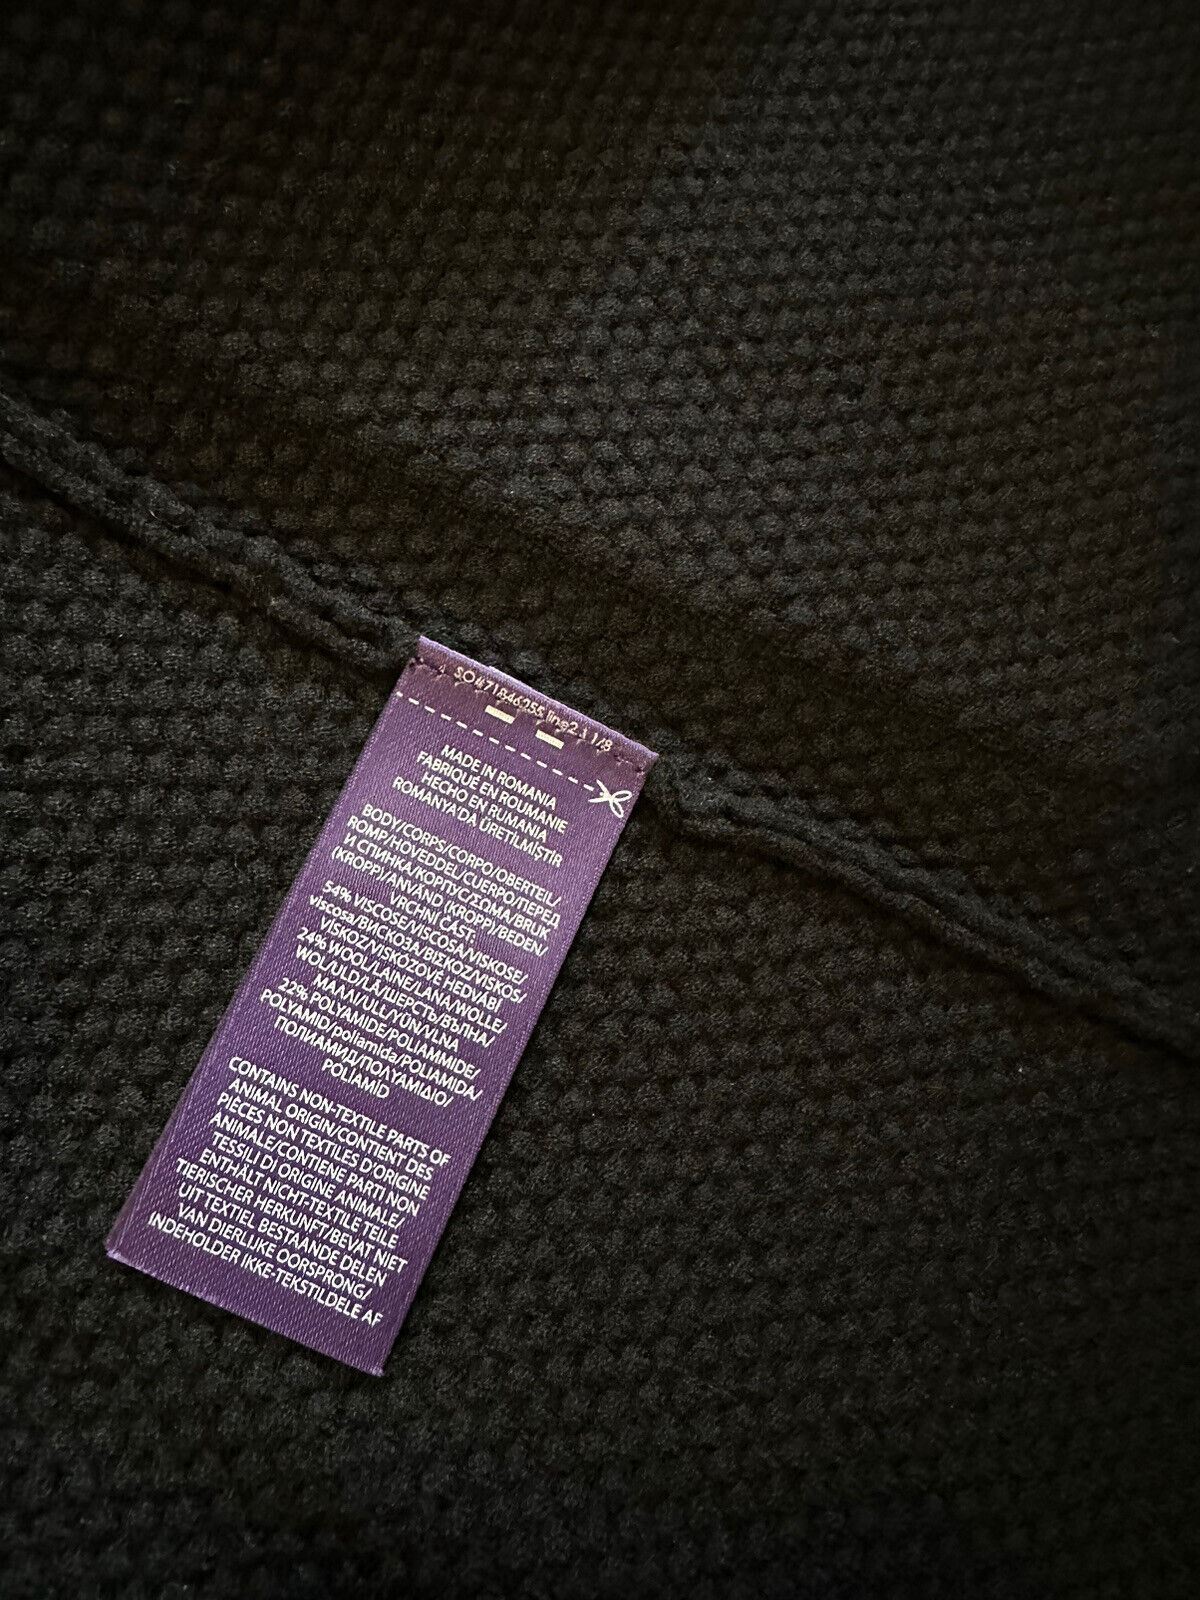 NWT $1695 Ralph Lauren Purple Label Мужской кардиган с шалью, свитер, куртка, черный XS